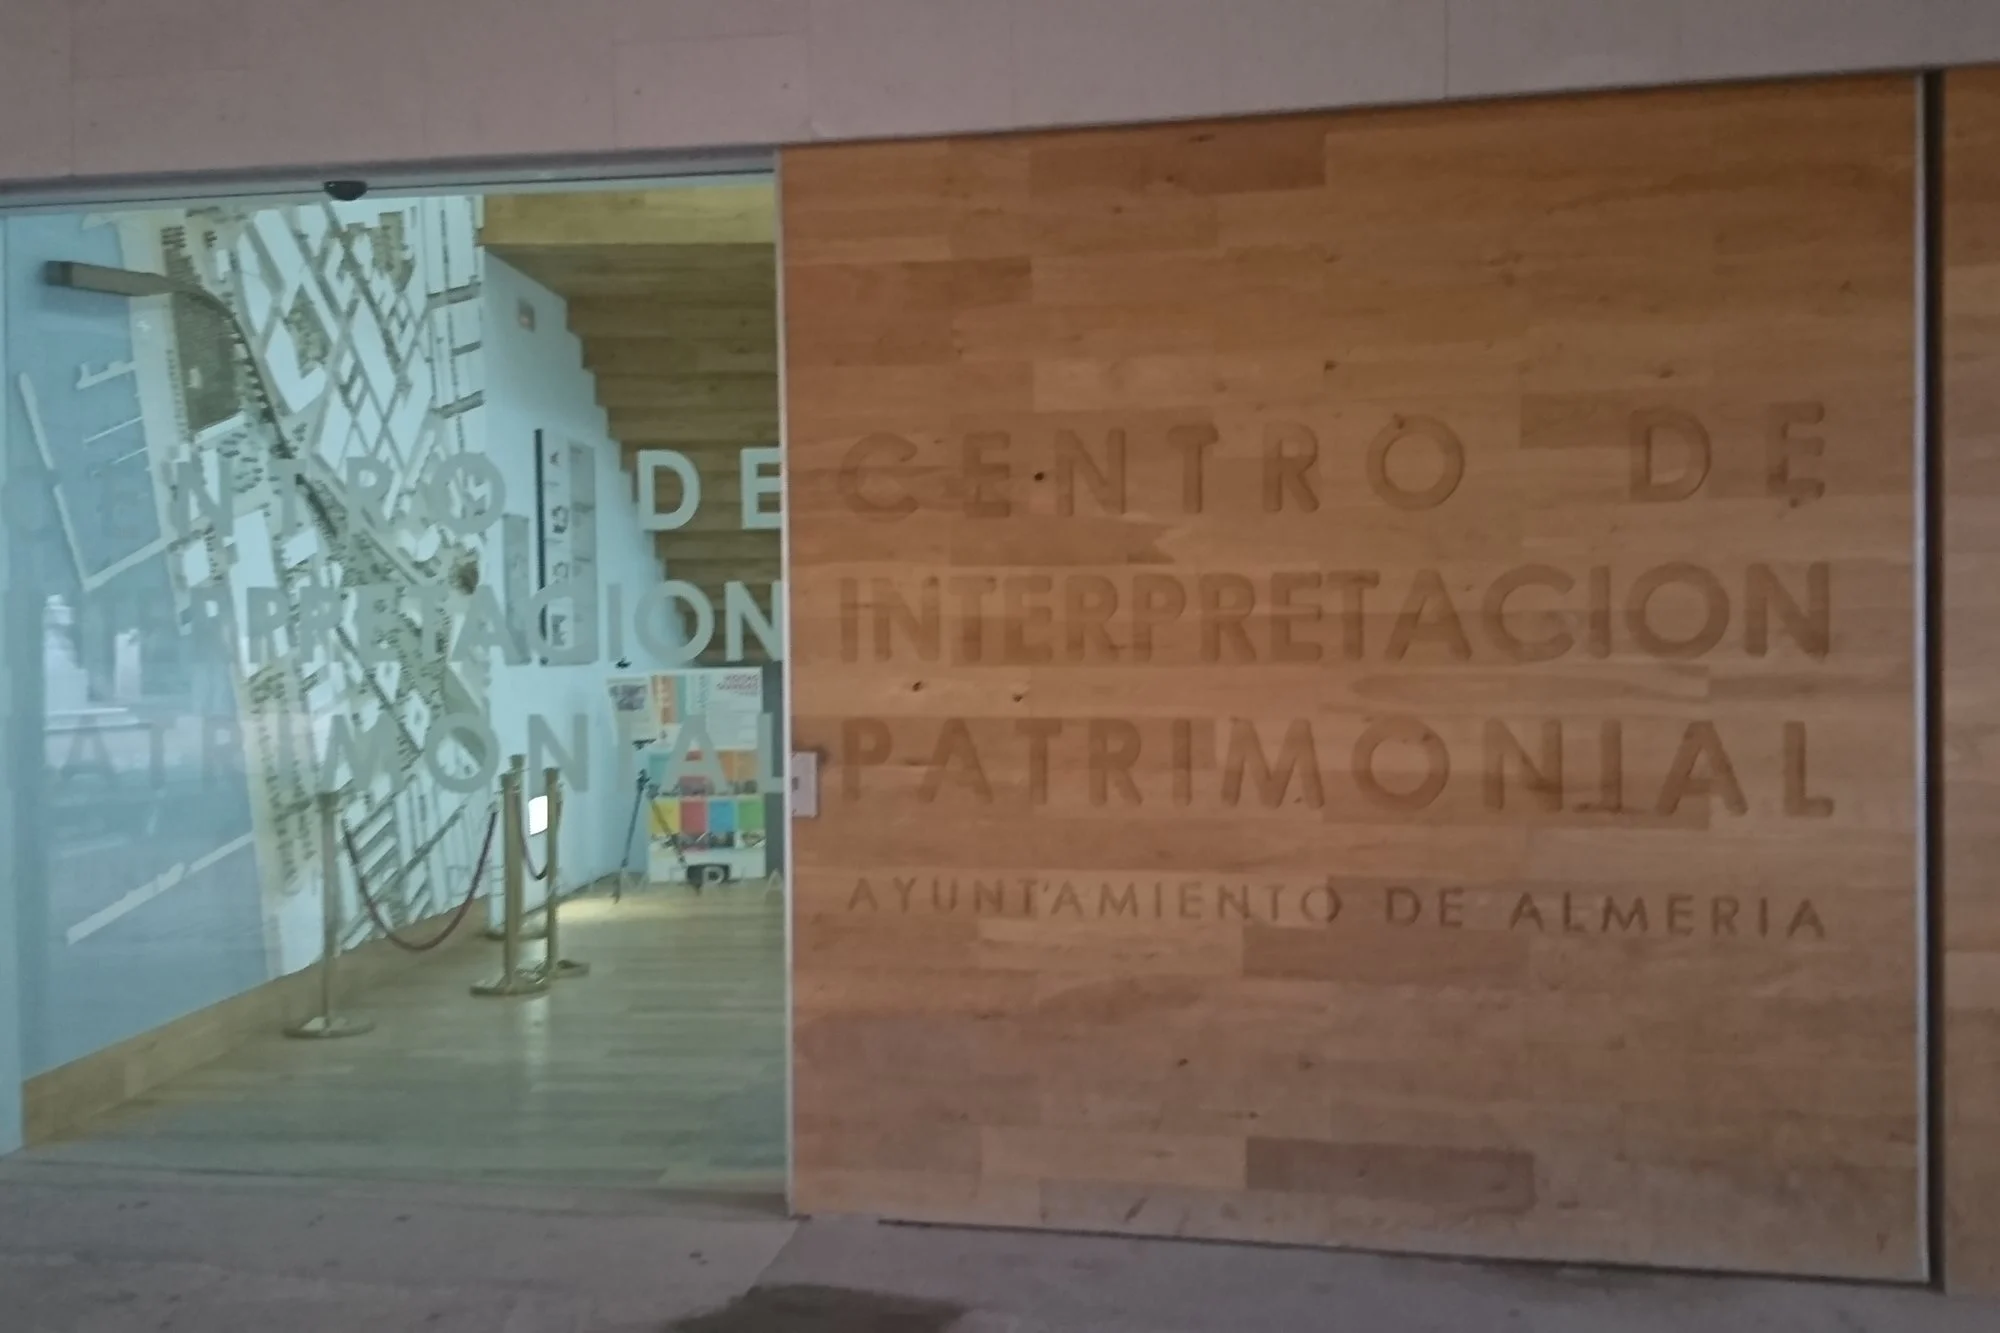 Descubre la historia de Almería en el Centro de Interpretación Patrimonial